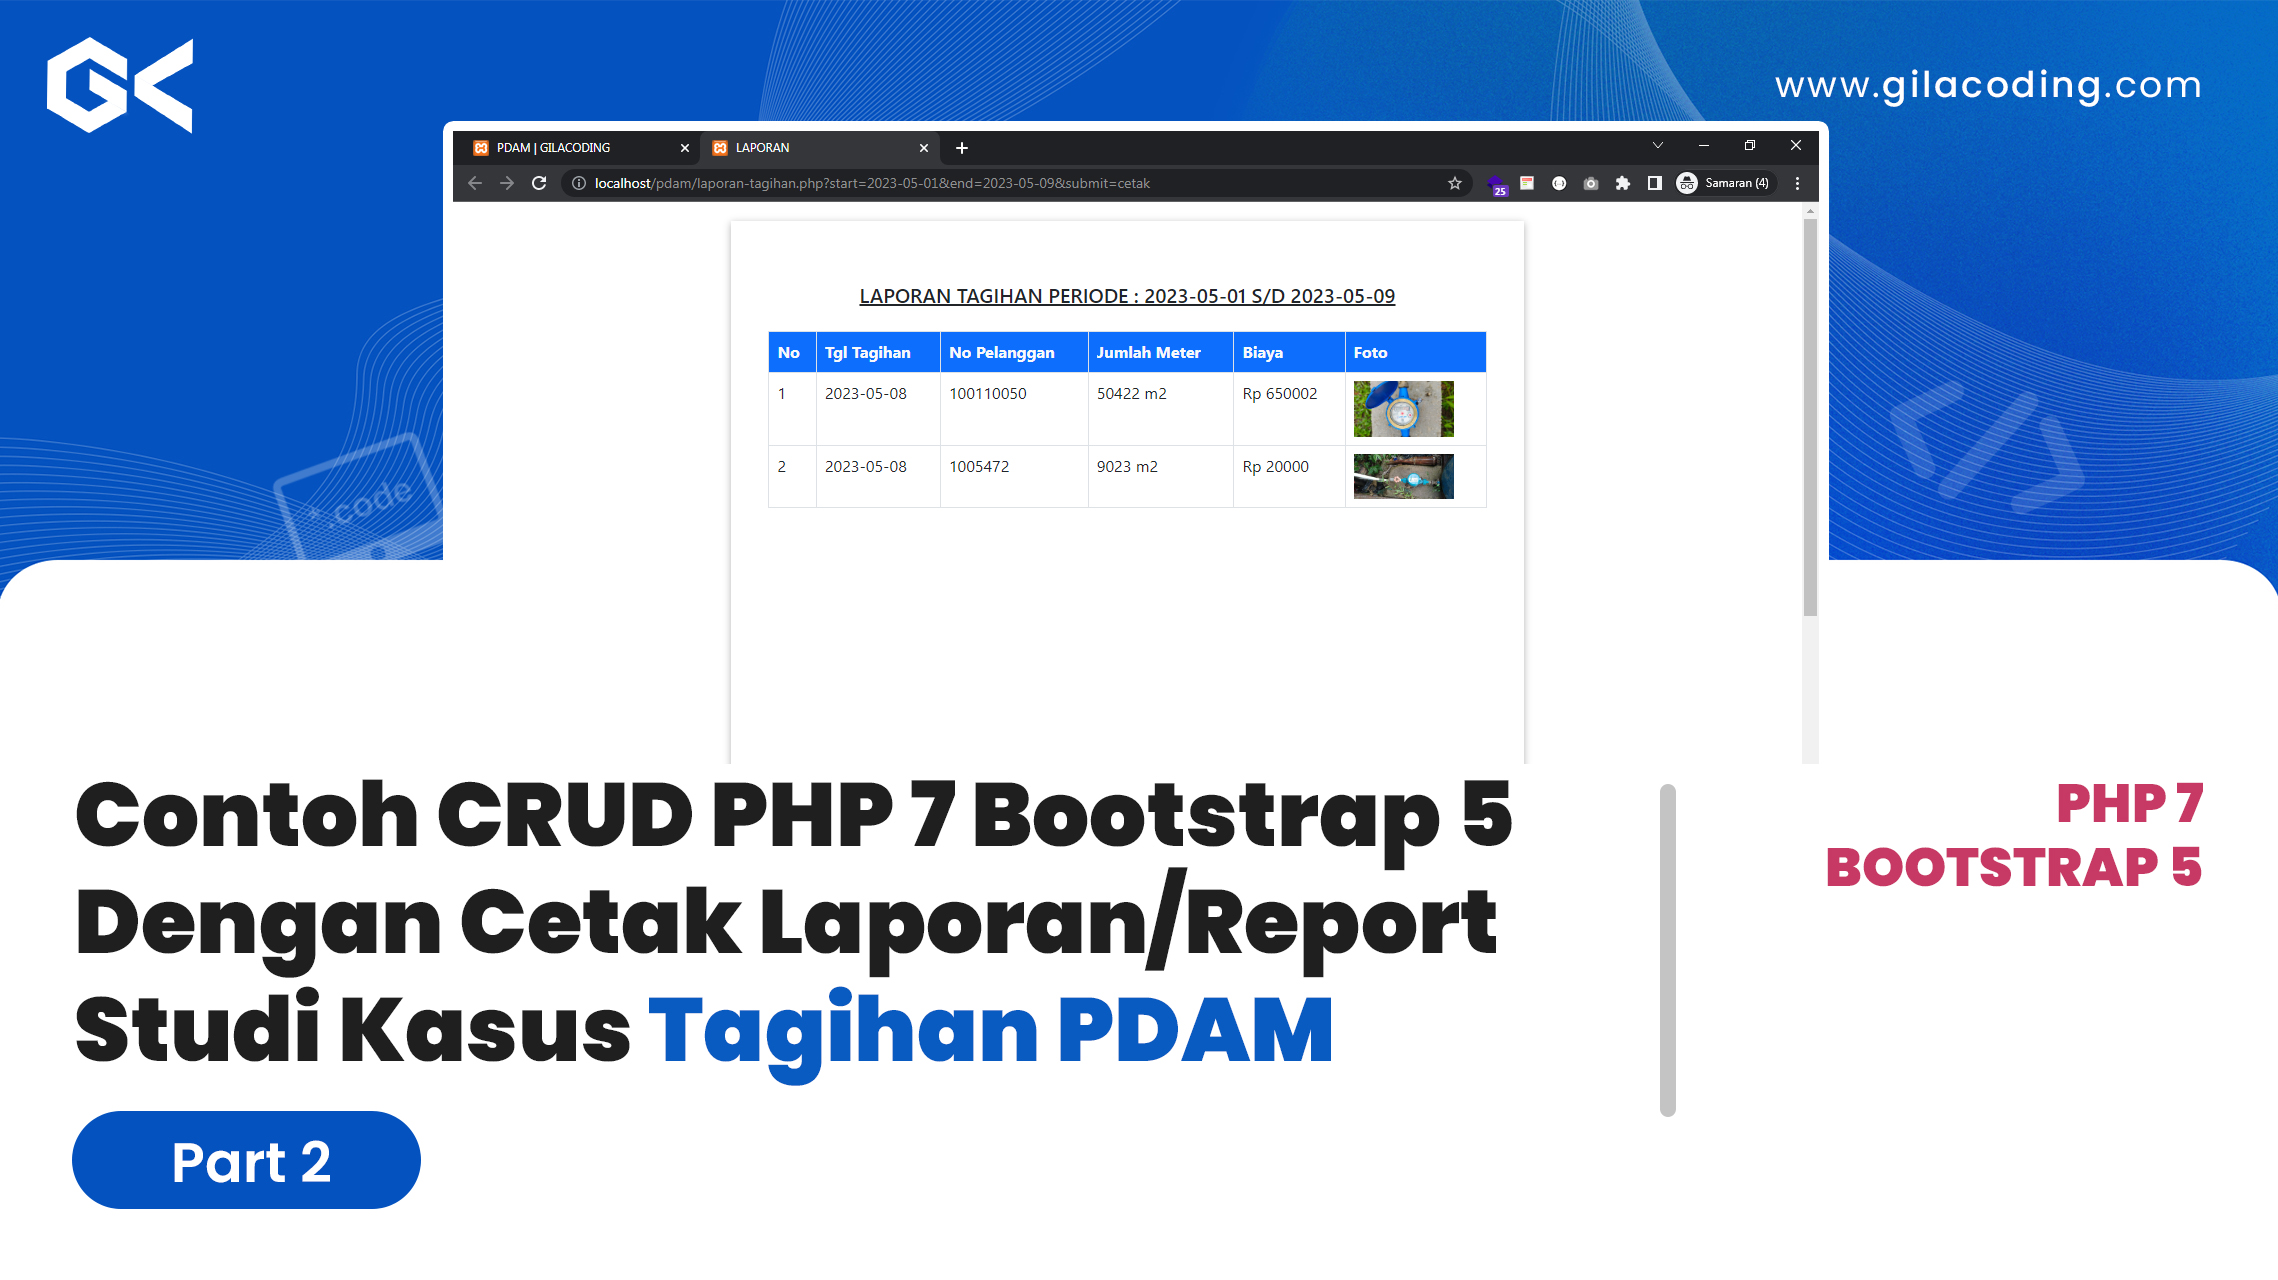 Contoh CRUD PHP 7 Bootstrap 5 Dengan Cetak Laporan/Report Studi Kasus Tagihan PDAM - Part 2